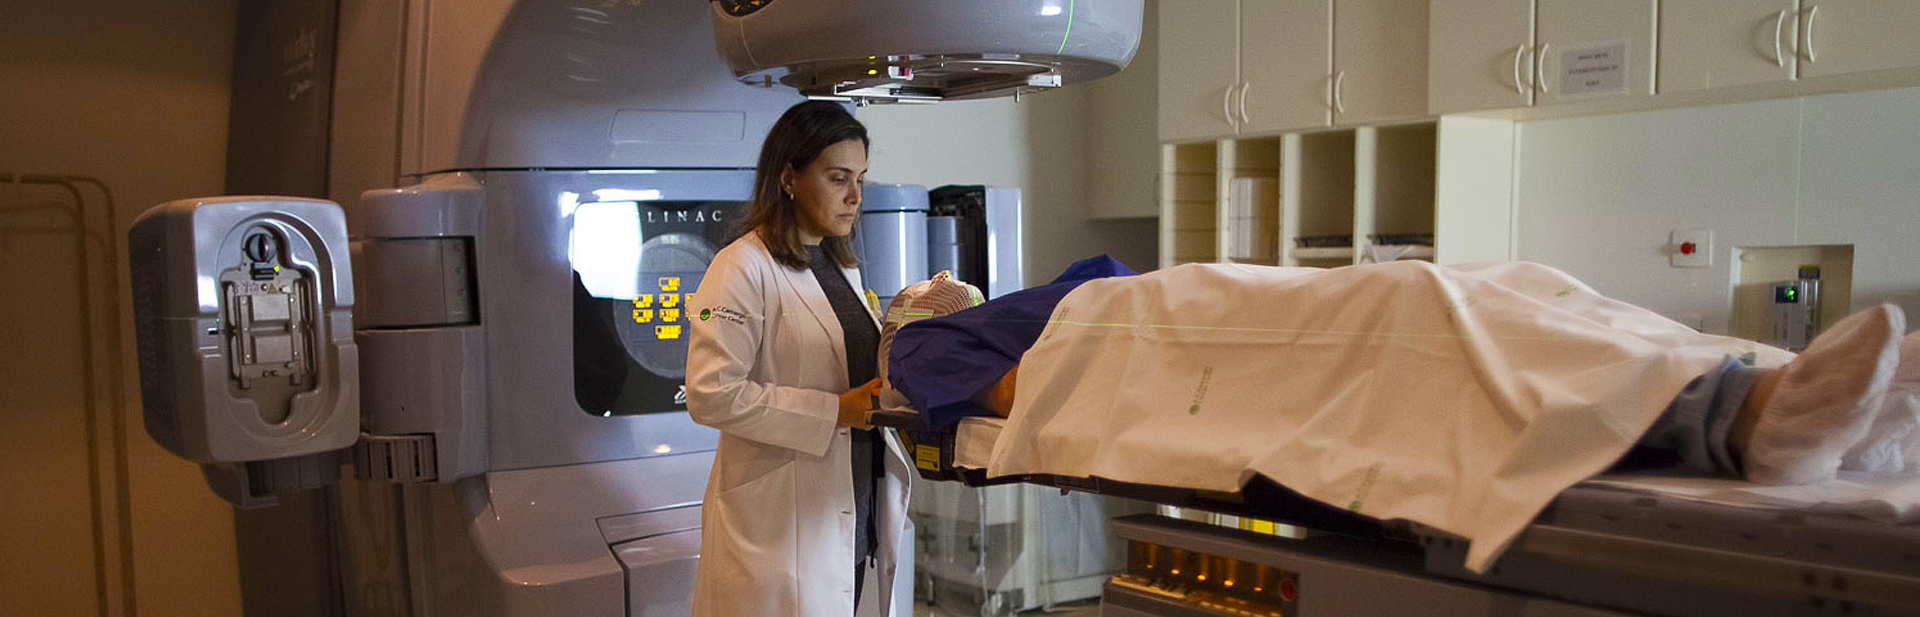 Uma médica branca de cabelos castanhos lisos ajustando um equipamento de radioterapia na cabeça de um paciente